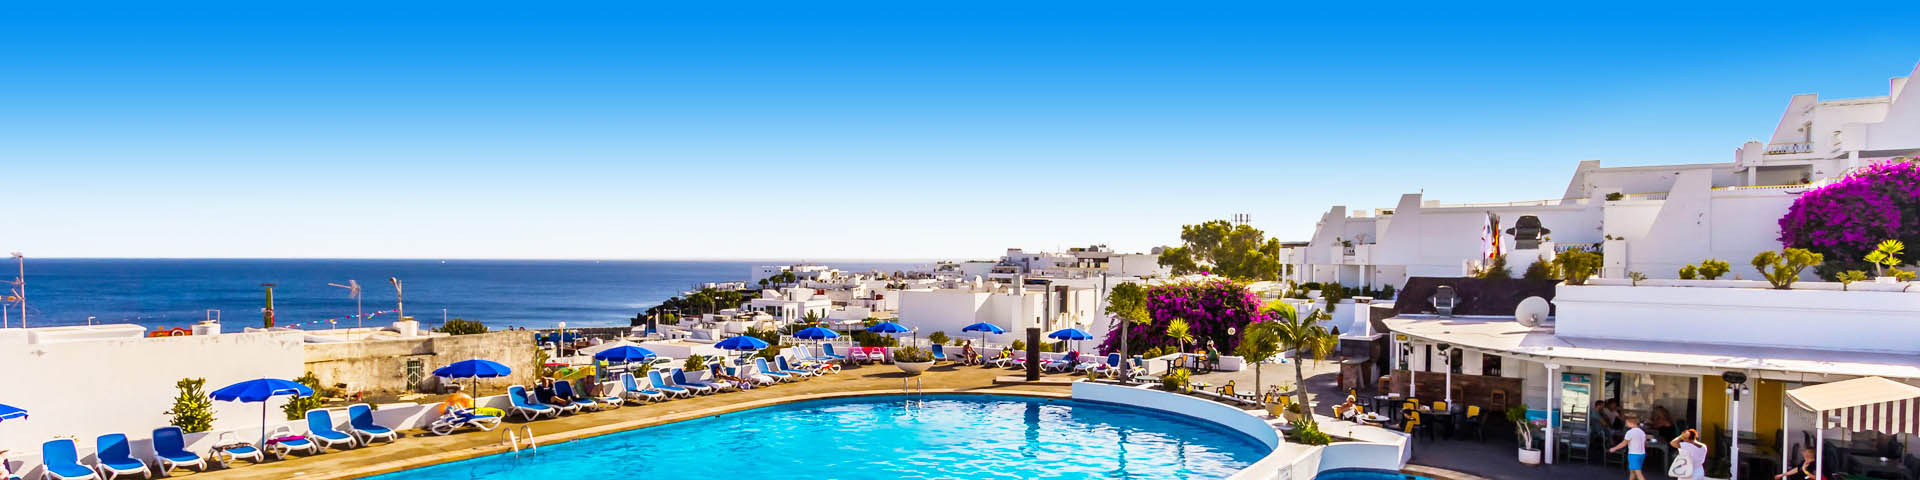 Een blauw zwembad en witte huisjes in Puerto del Carmen